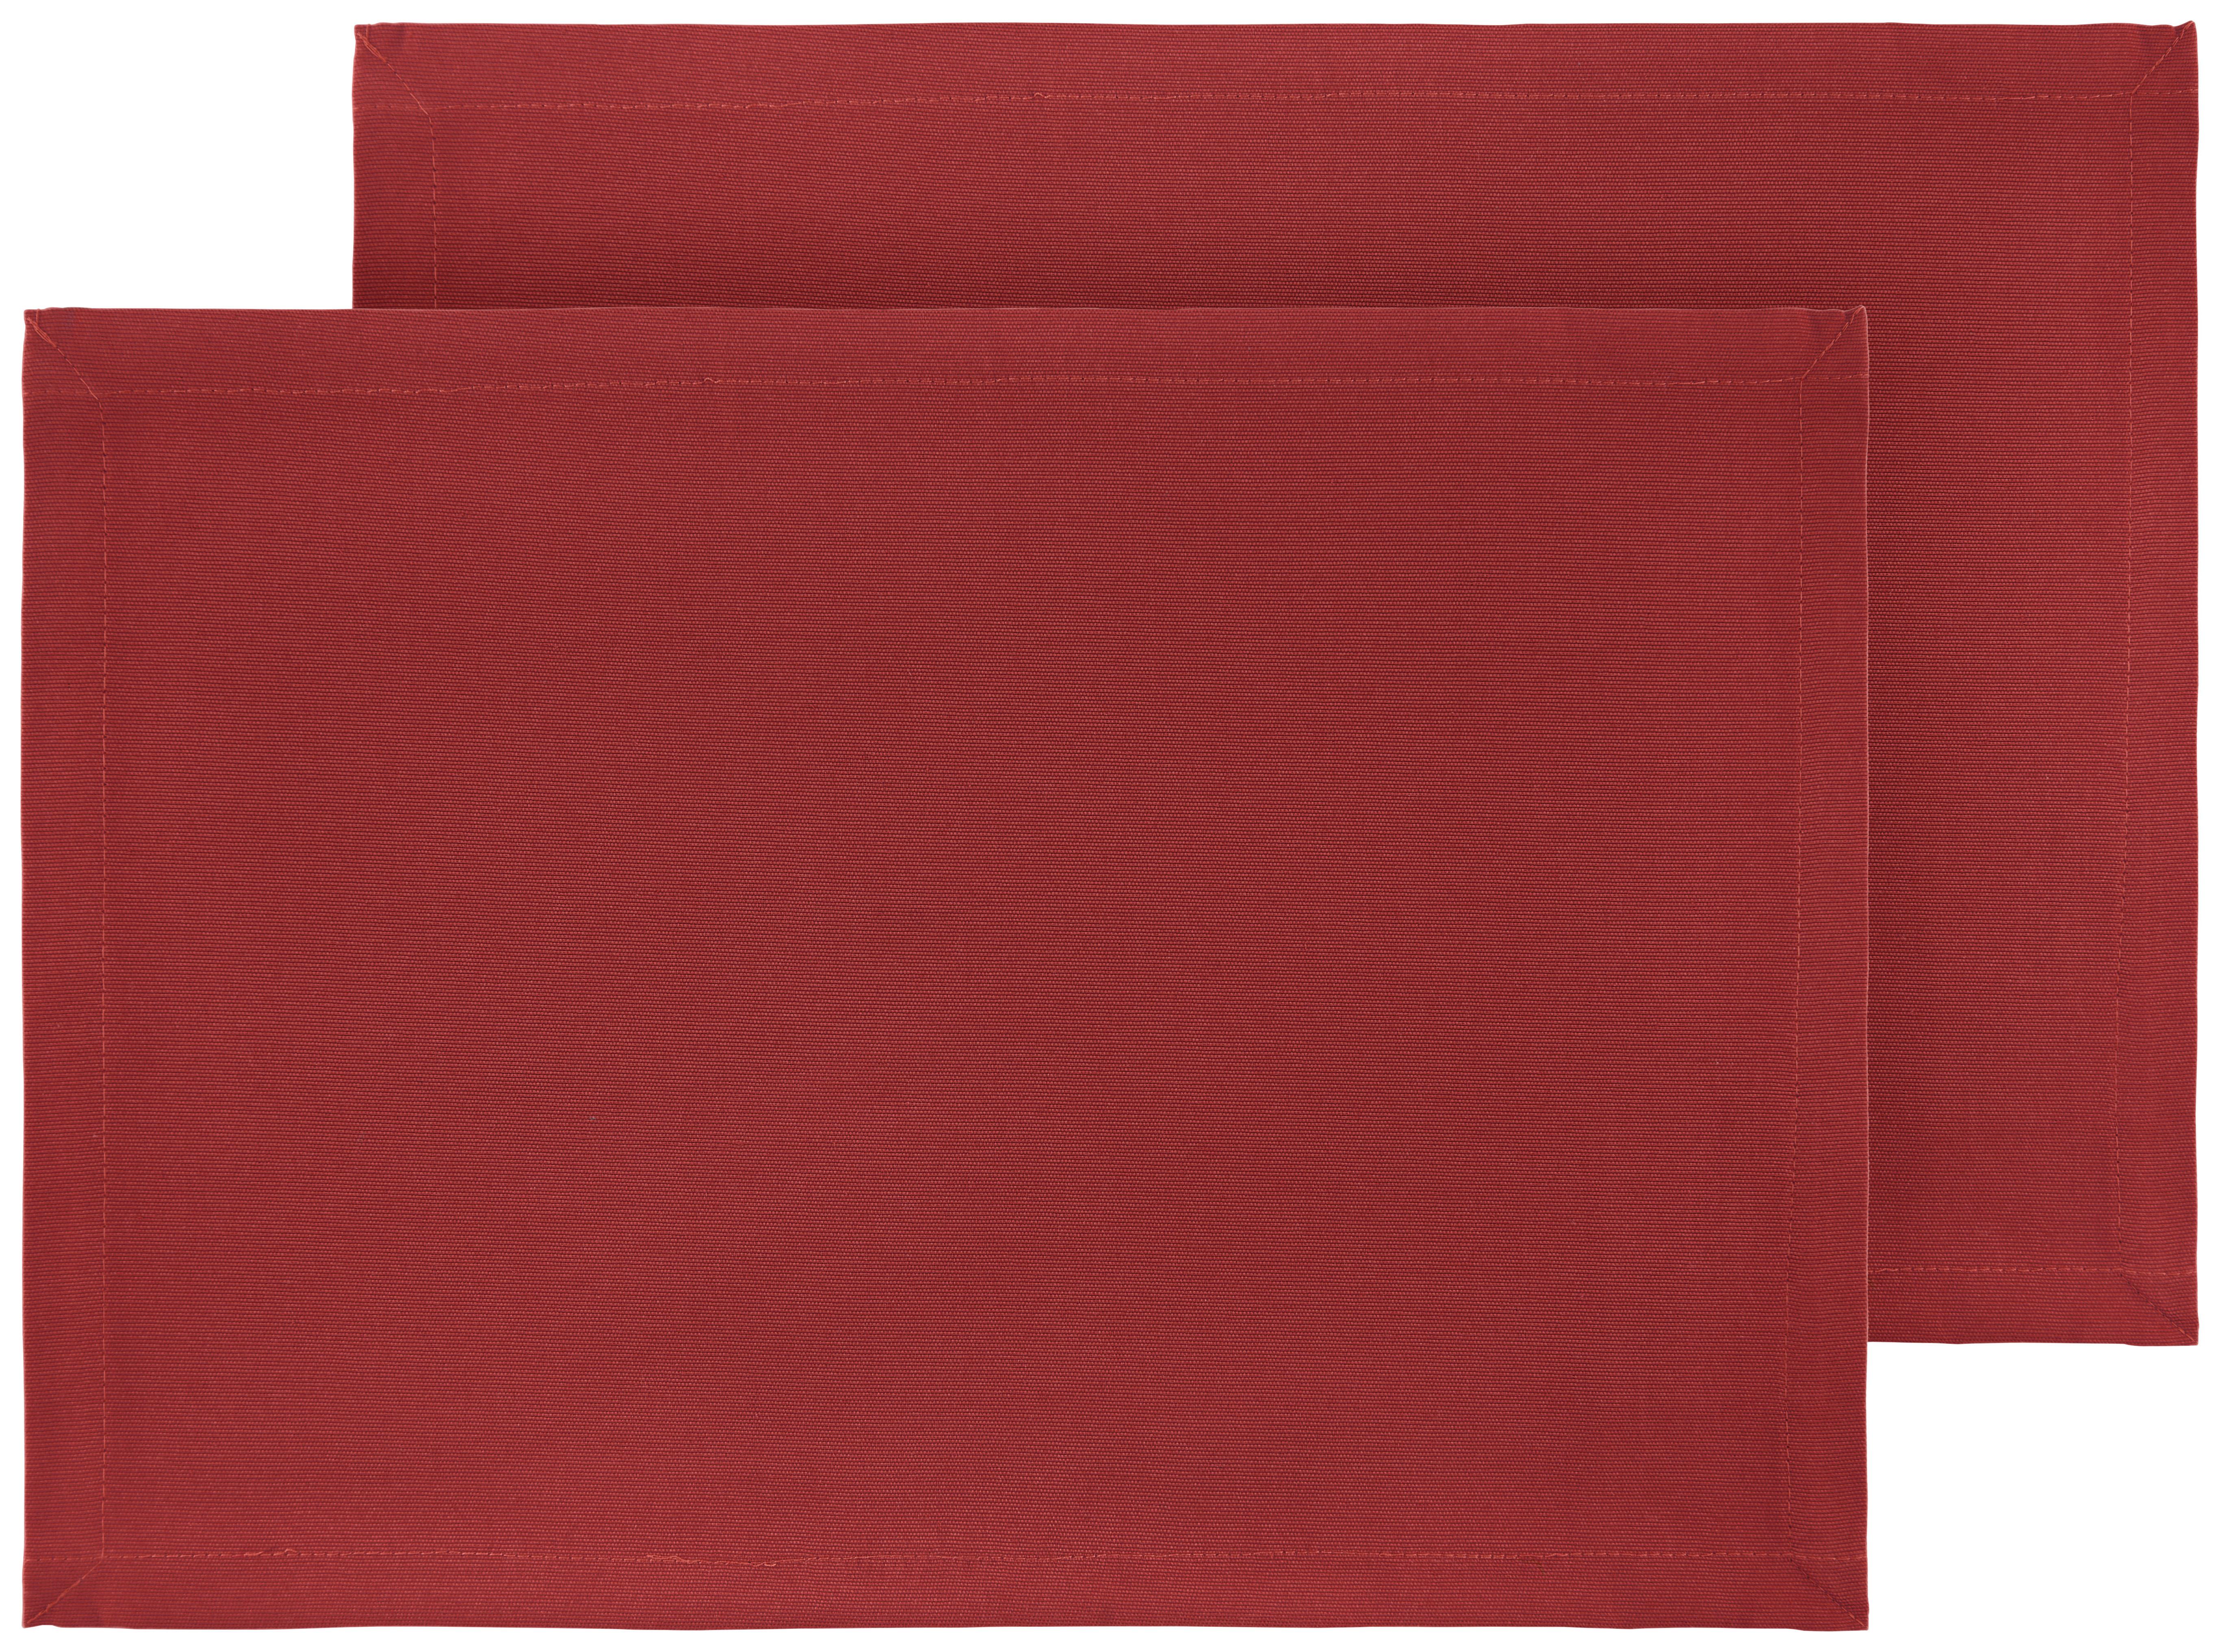 Étkezőalátét Steffi 33/45cm, 2db - Piros, Textil (33/45cm) - Mary's